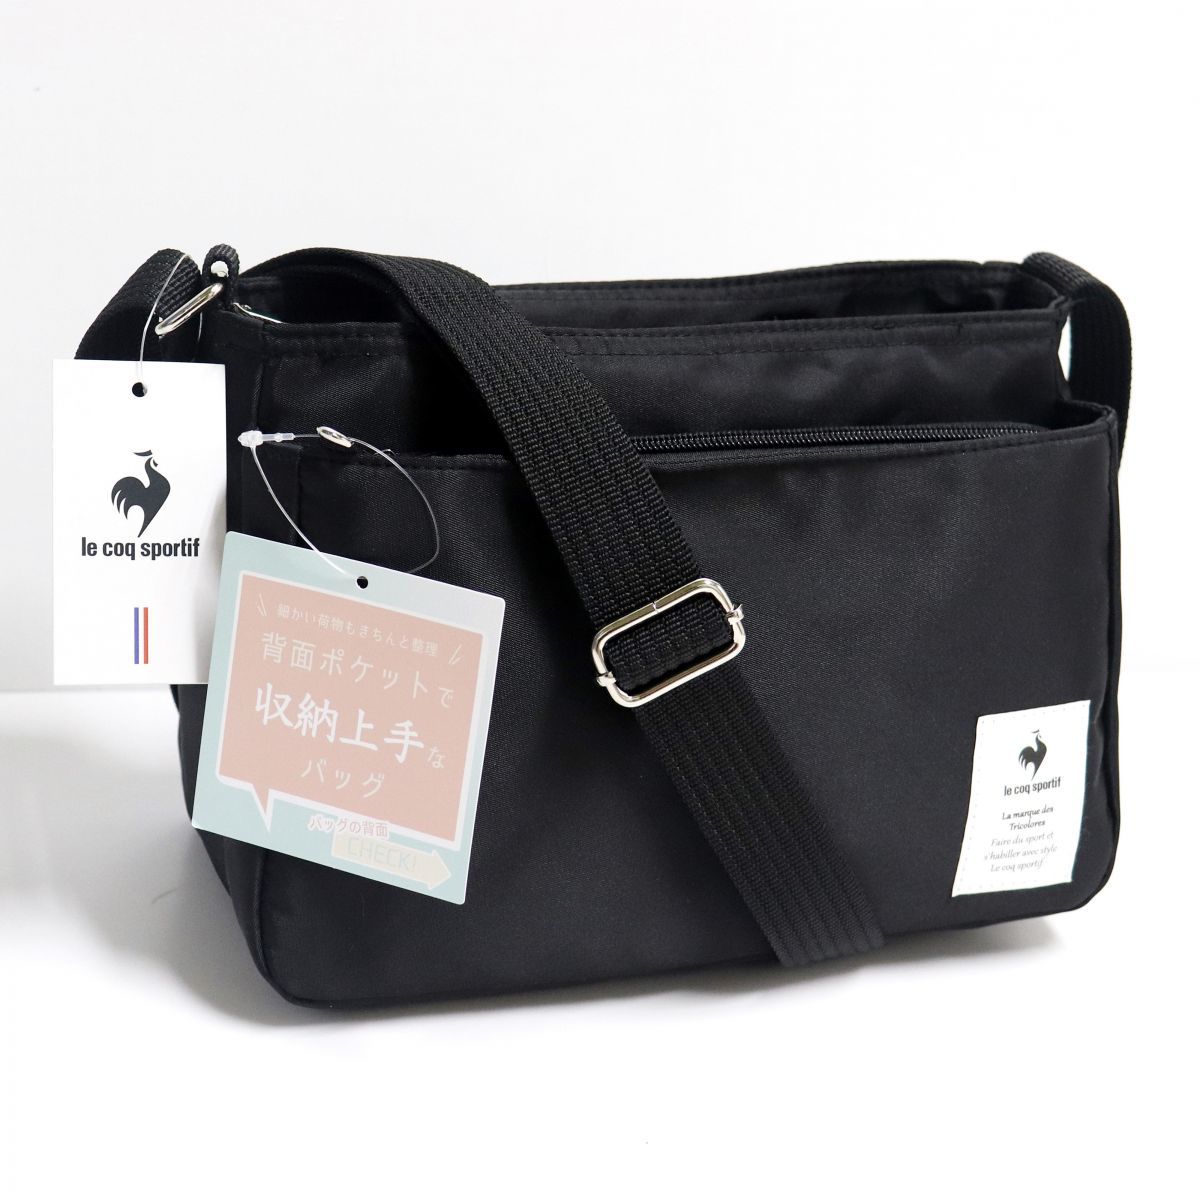 * Le Coq le coq sportif новый товар карман много место хранения сила сумка на плечо сумка сумка BAG чёрный [36594-001] один шесть *QWER*